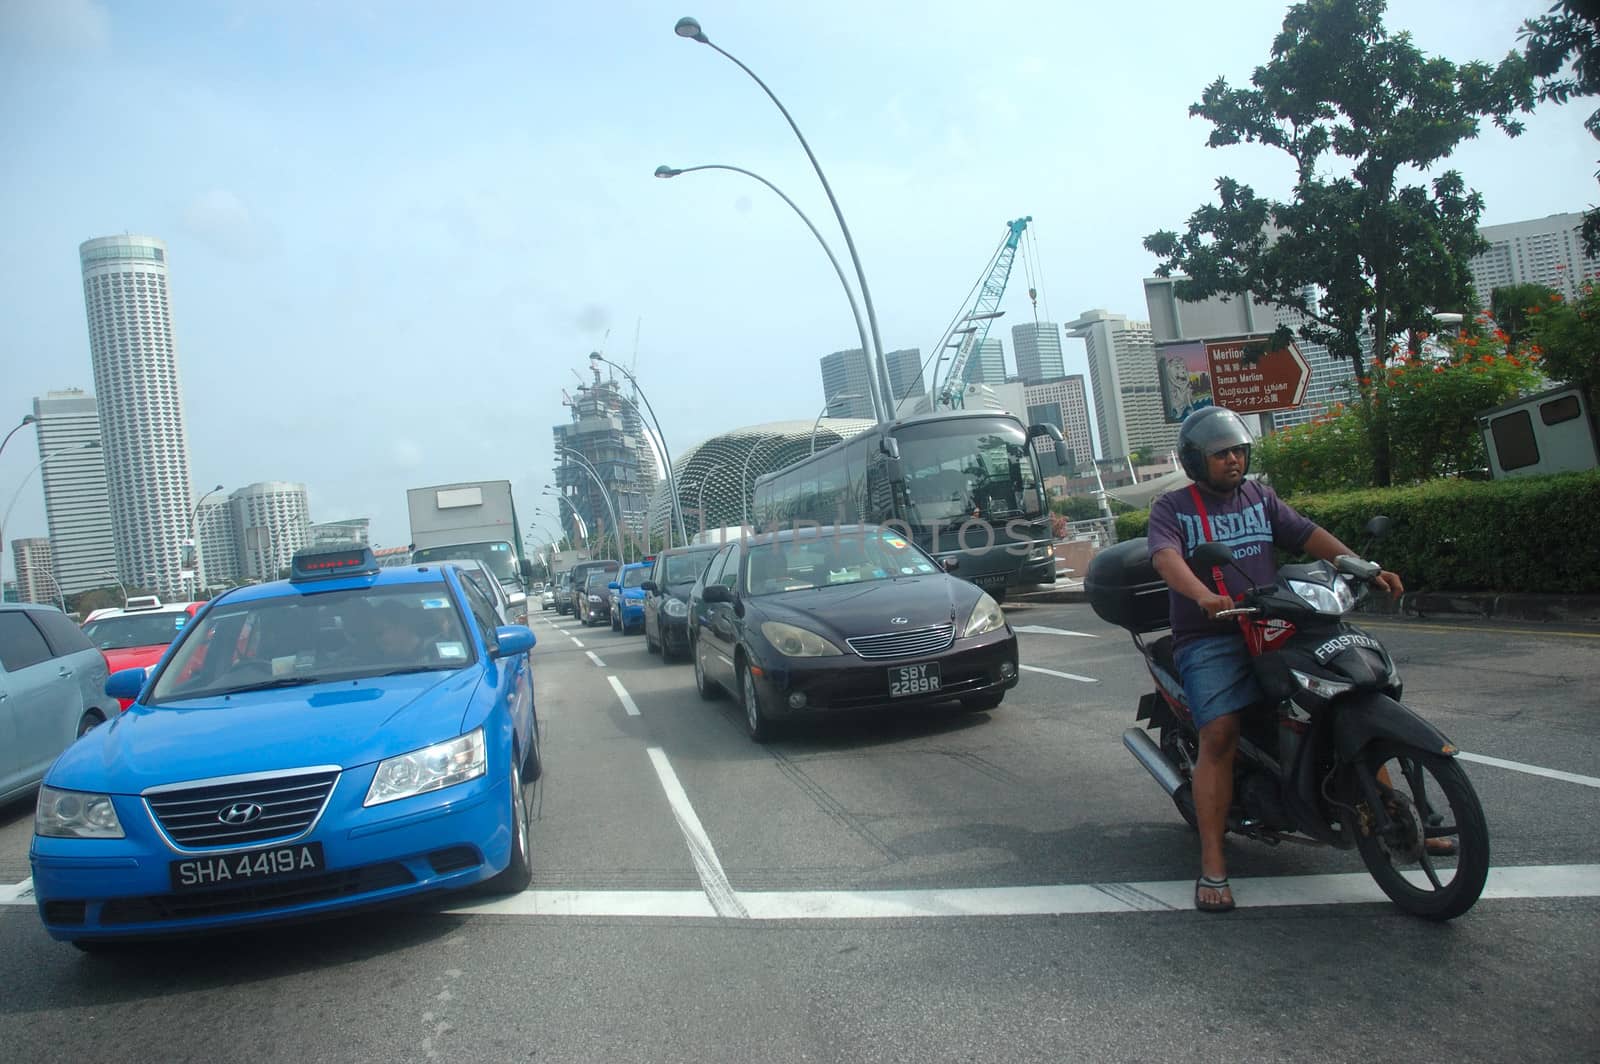 Road traffic by bluemarine